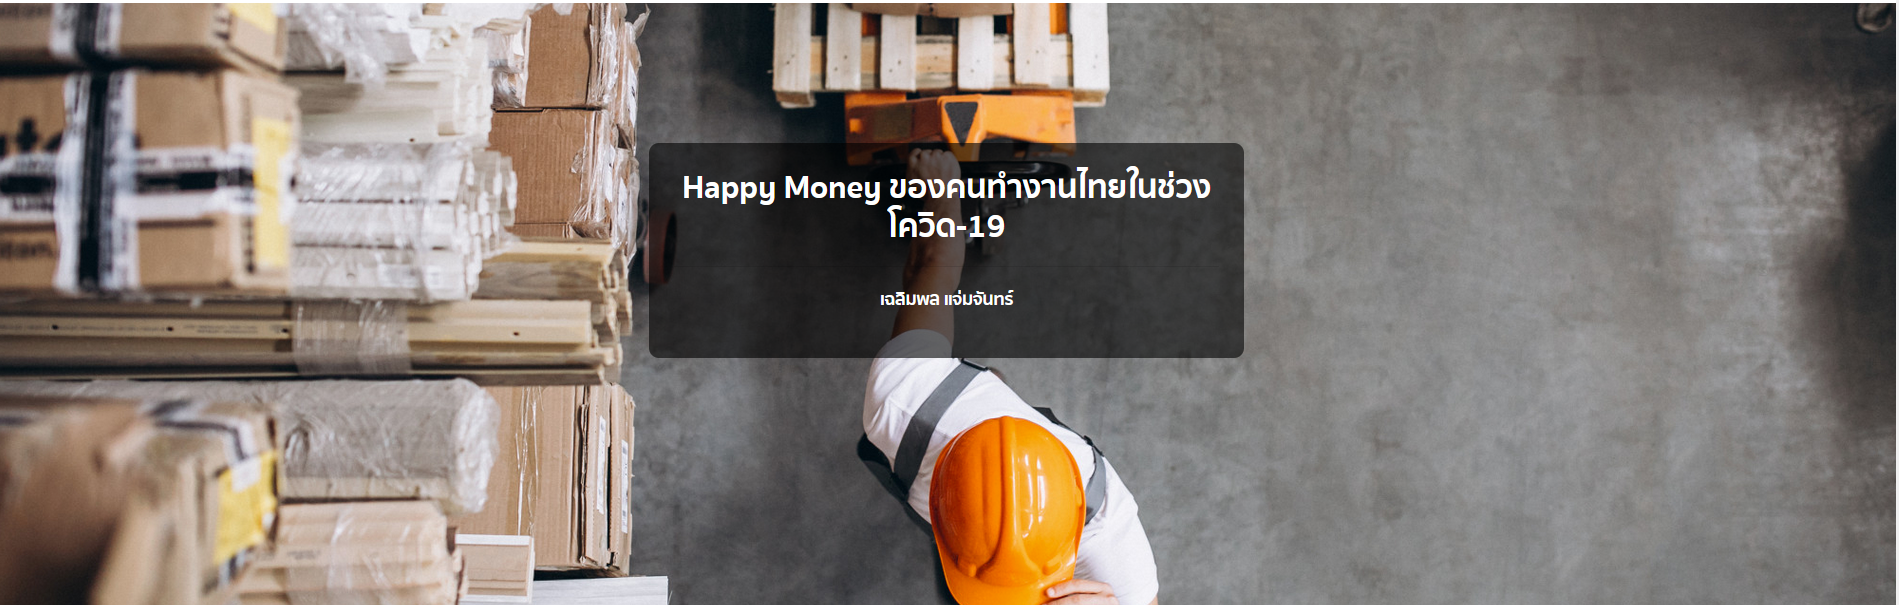  Happy Money ของคนทำงานไทยในช่วงโควิด-19  เฉลิมพล แจ่มจันทร์